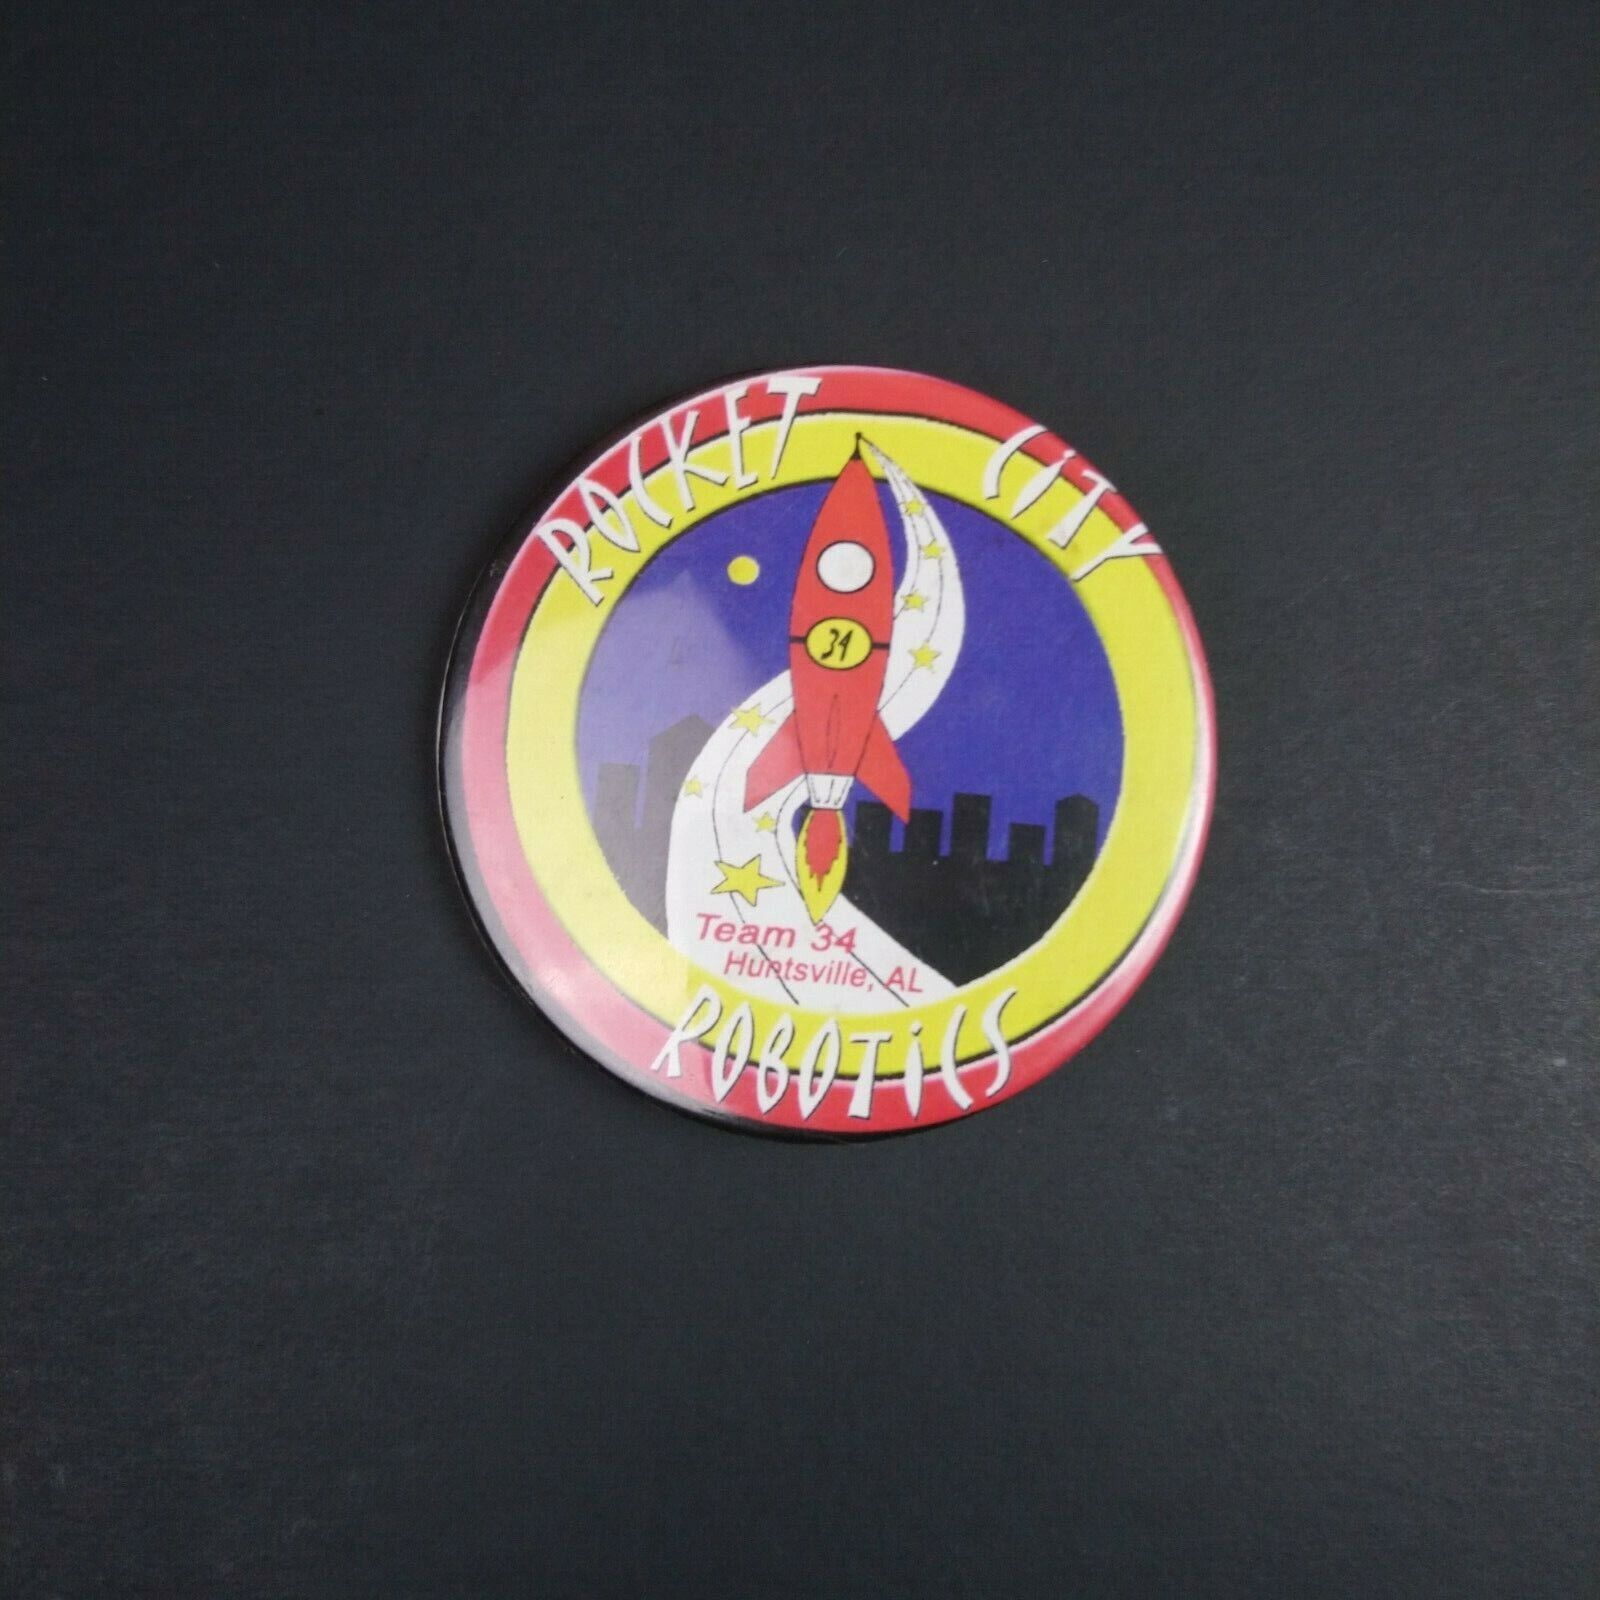 VTG 1990\'s Rocket City Robotics Team 34 Huntsville AL NASA Pin Button